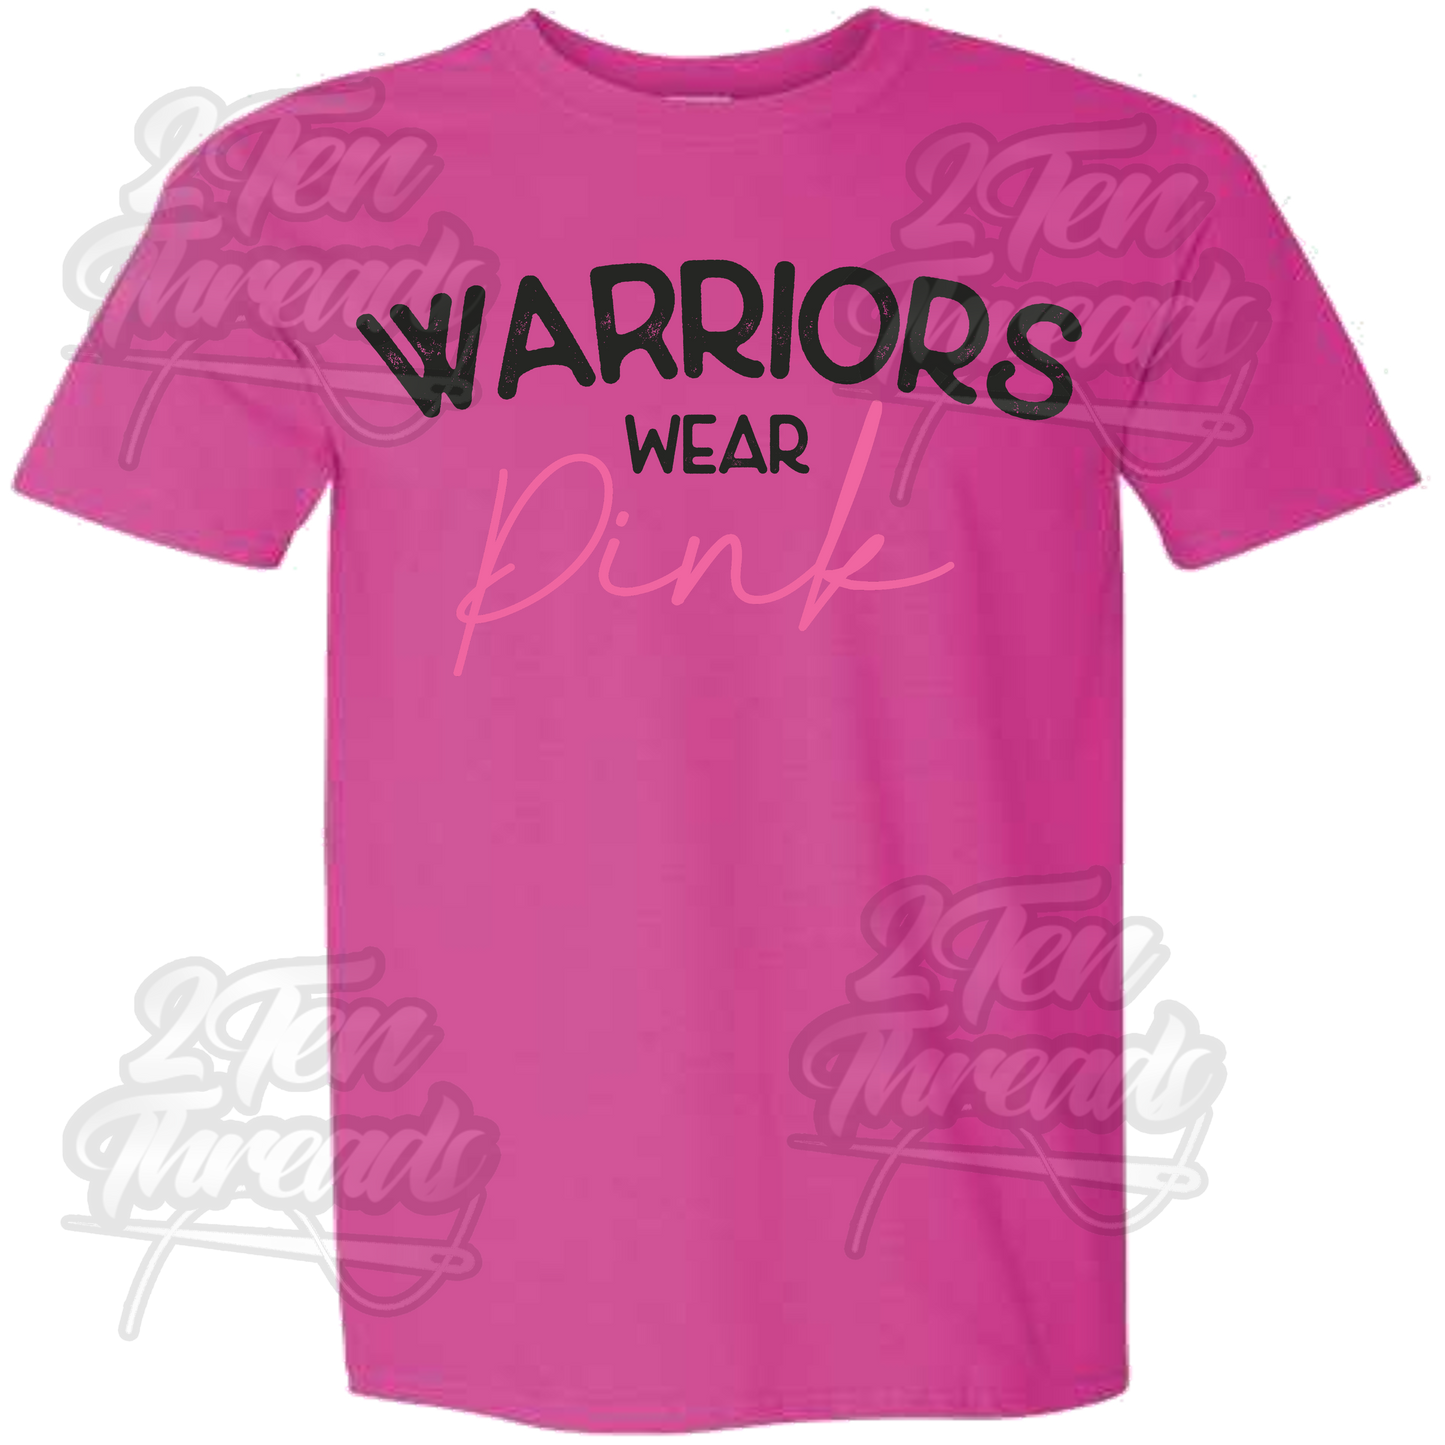 Warriors wear pink Shirt